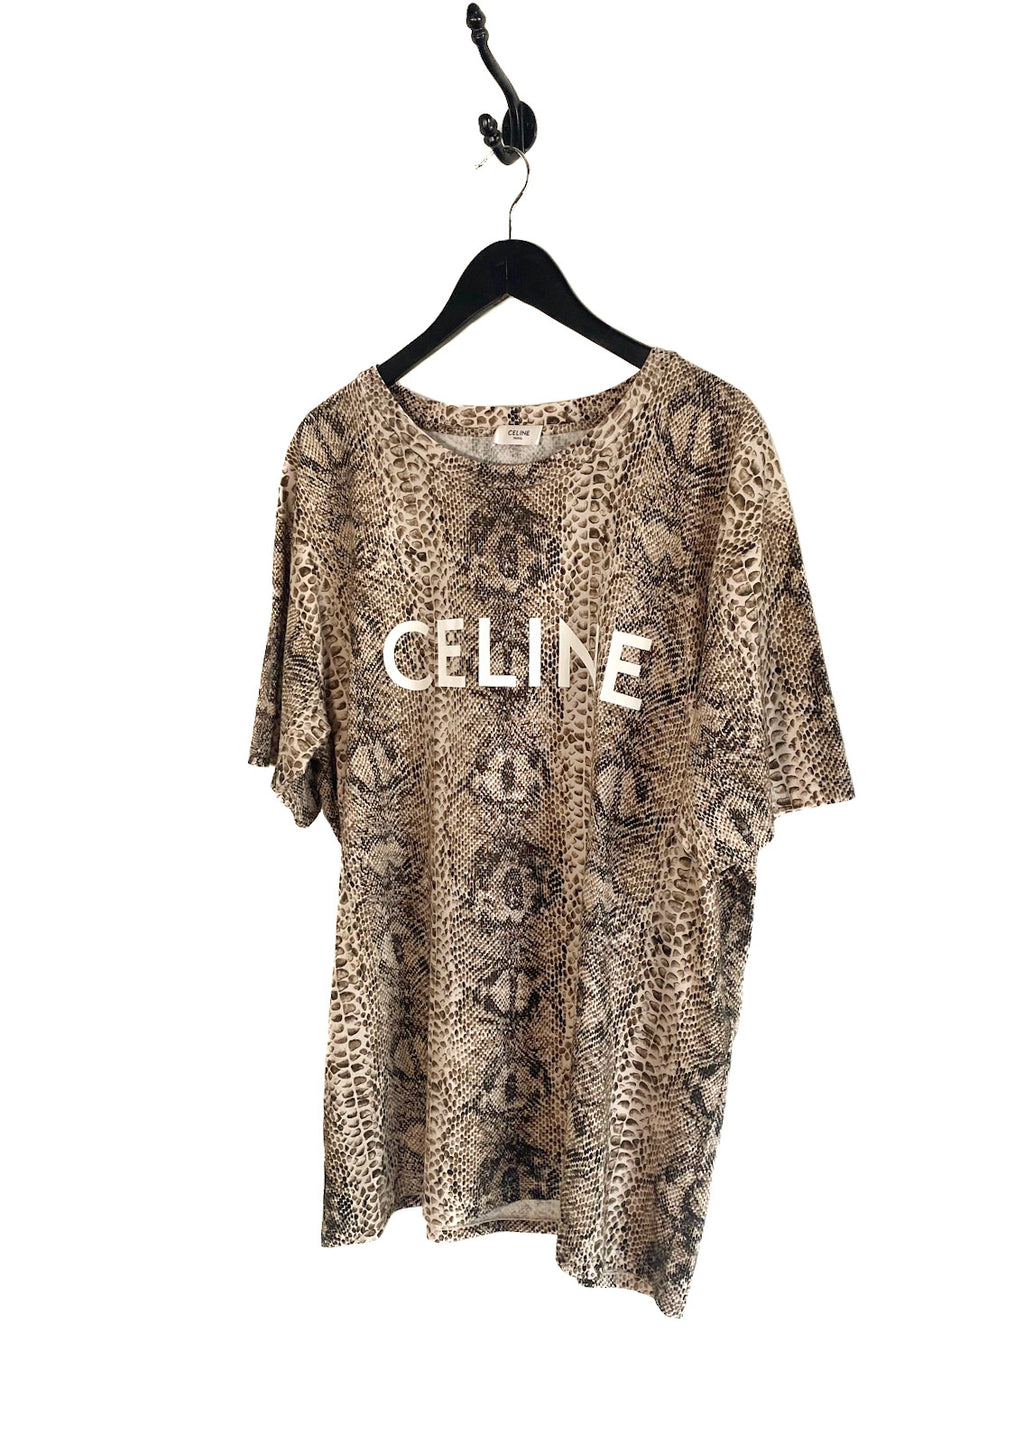 Celine Snake Print Logo T-shirt